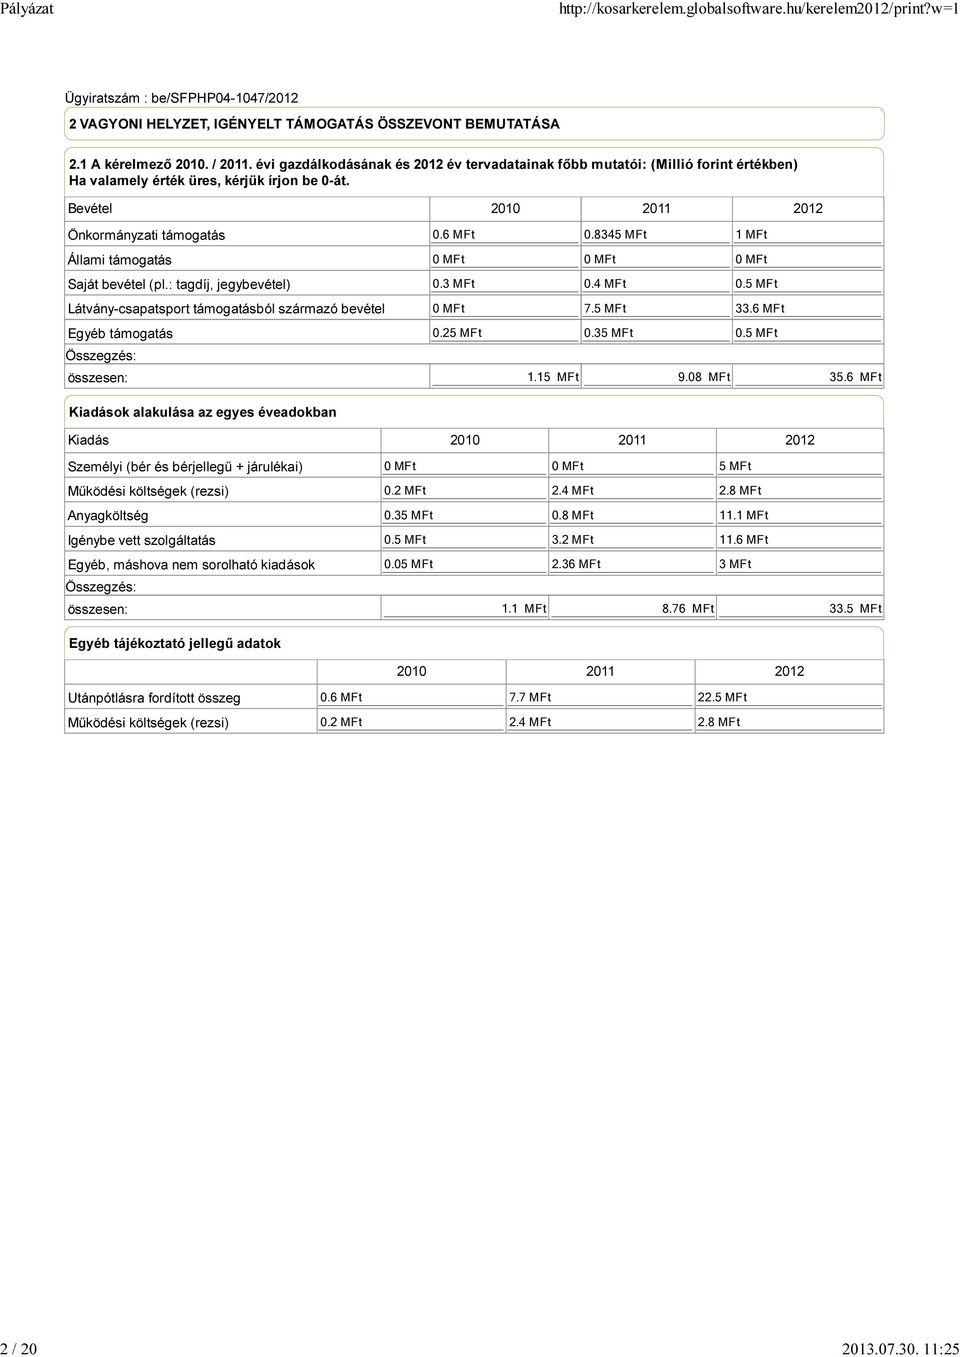 Bevétel 2010 2011 2012 Önkormányzati támogatás Állami támogatás Saját bevétel (pl.: tagdíj, jegybevétel) Látvány-csapatsport támogatásból származó bevétel Egyéb támogatás 0.6 MFt 0.